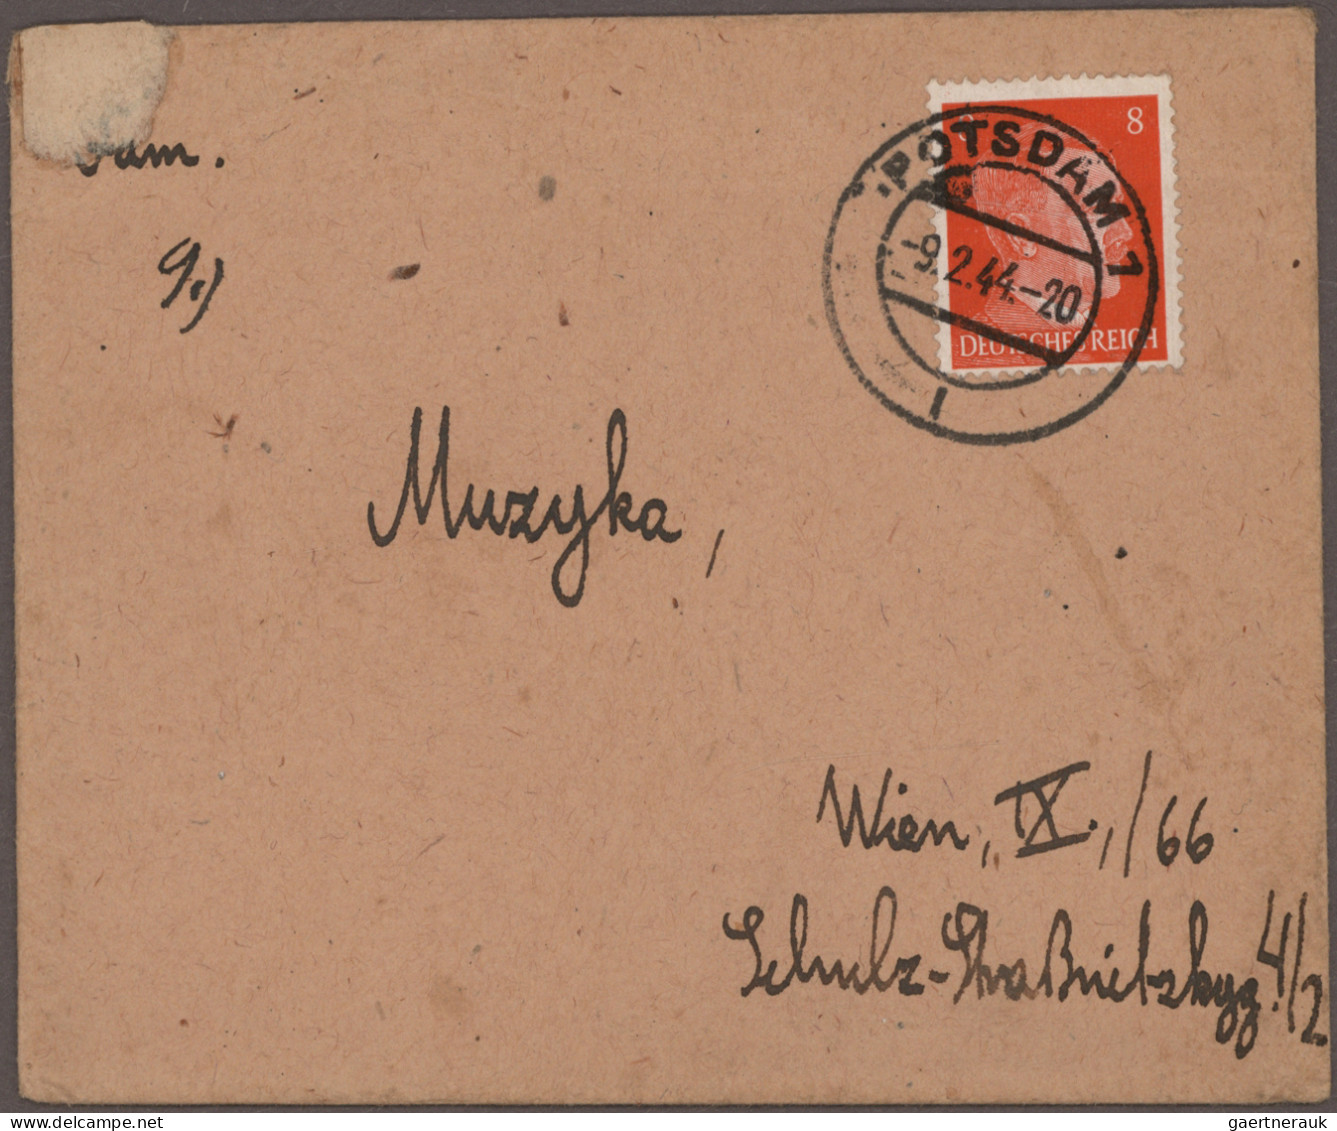 Österreich - Besonderheiten: 1943/1944, sieben Briefe mit Inhalt (auf Vordrucken